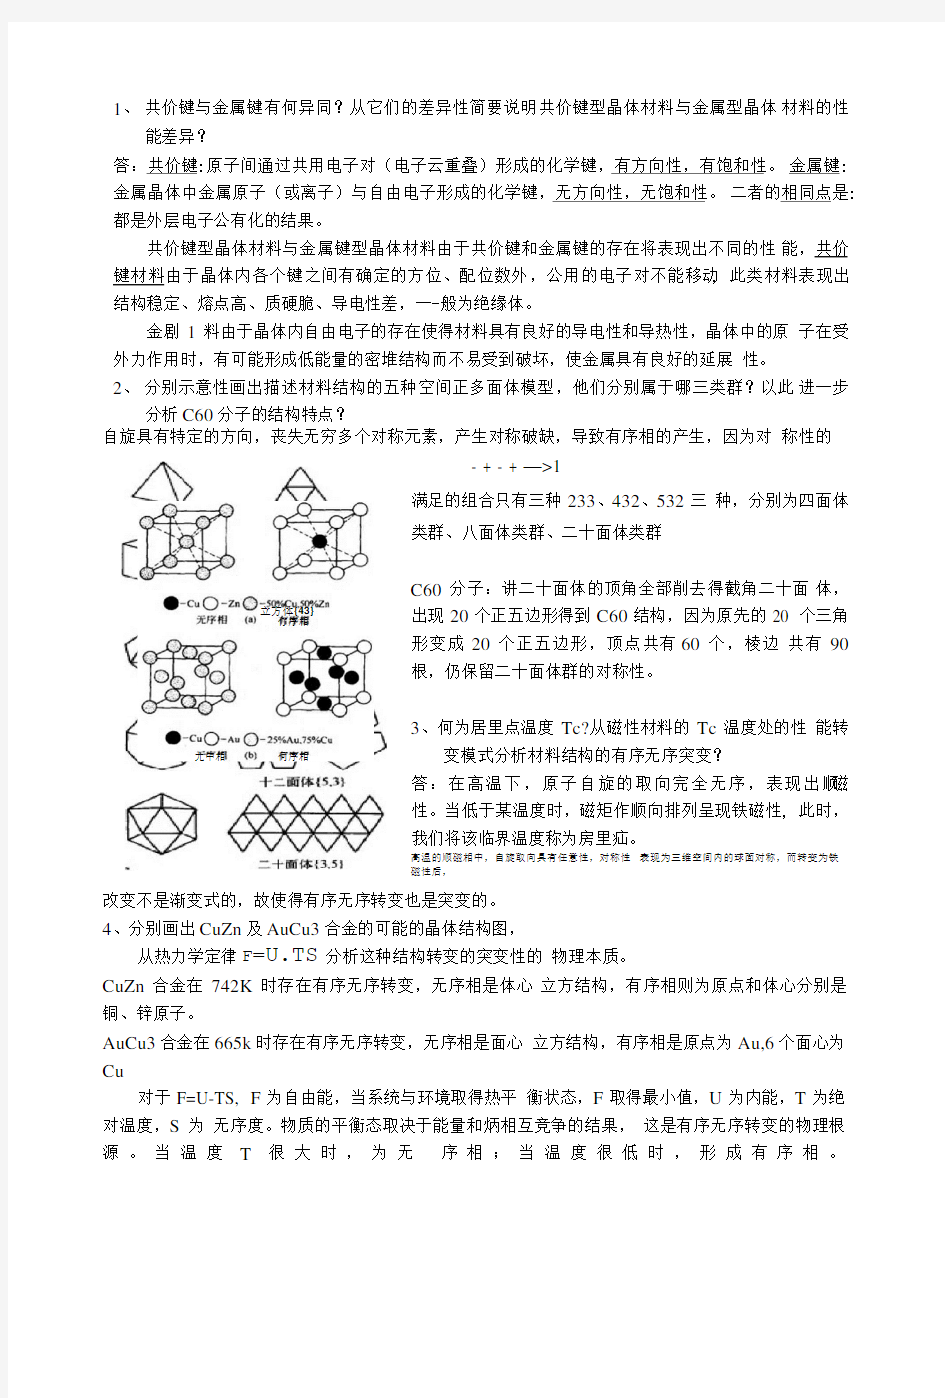 广东工业大学-材料结构与性能-材料科学导论-习题.doc